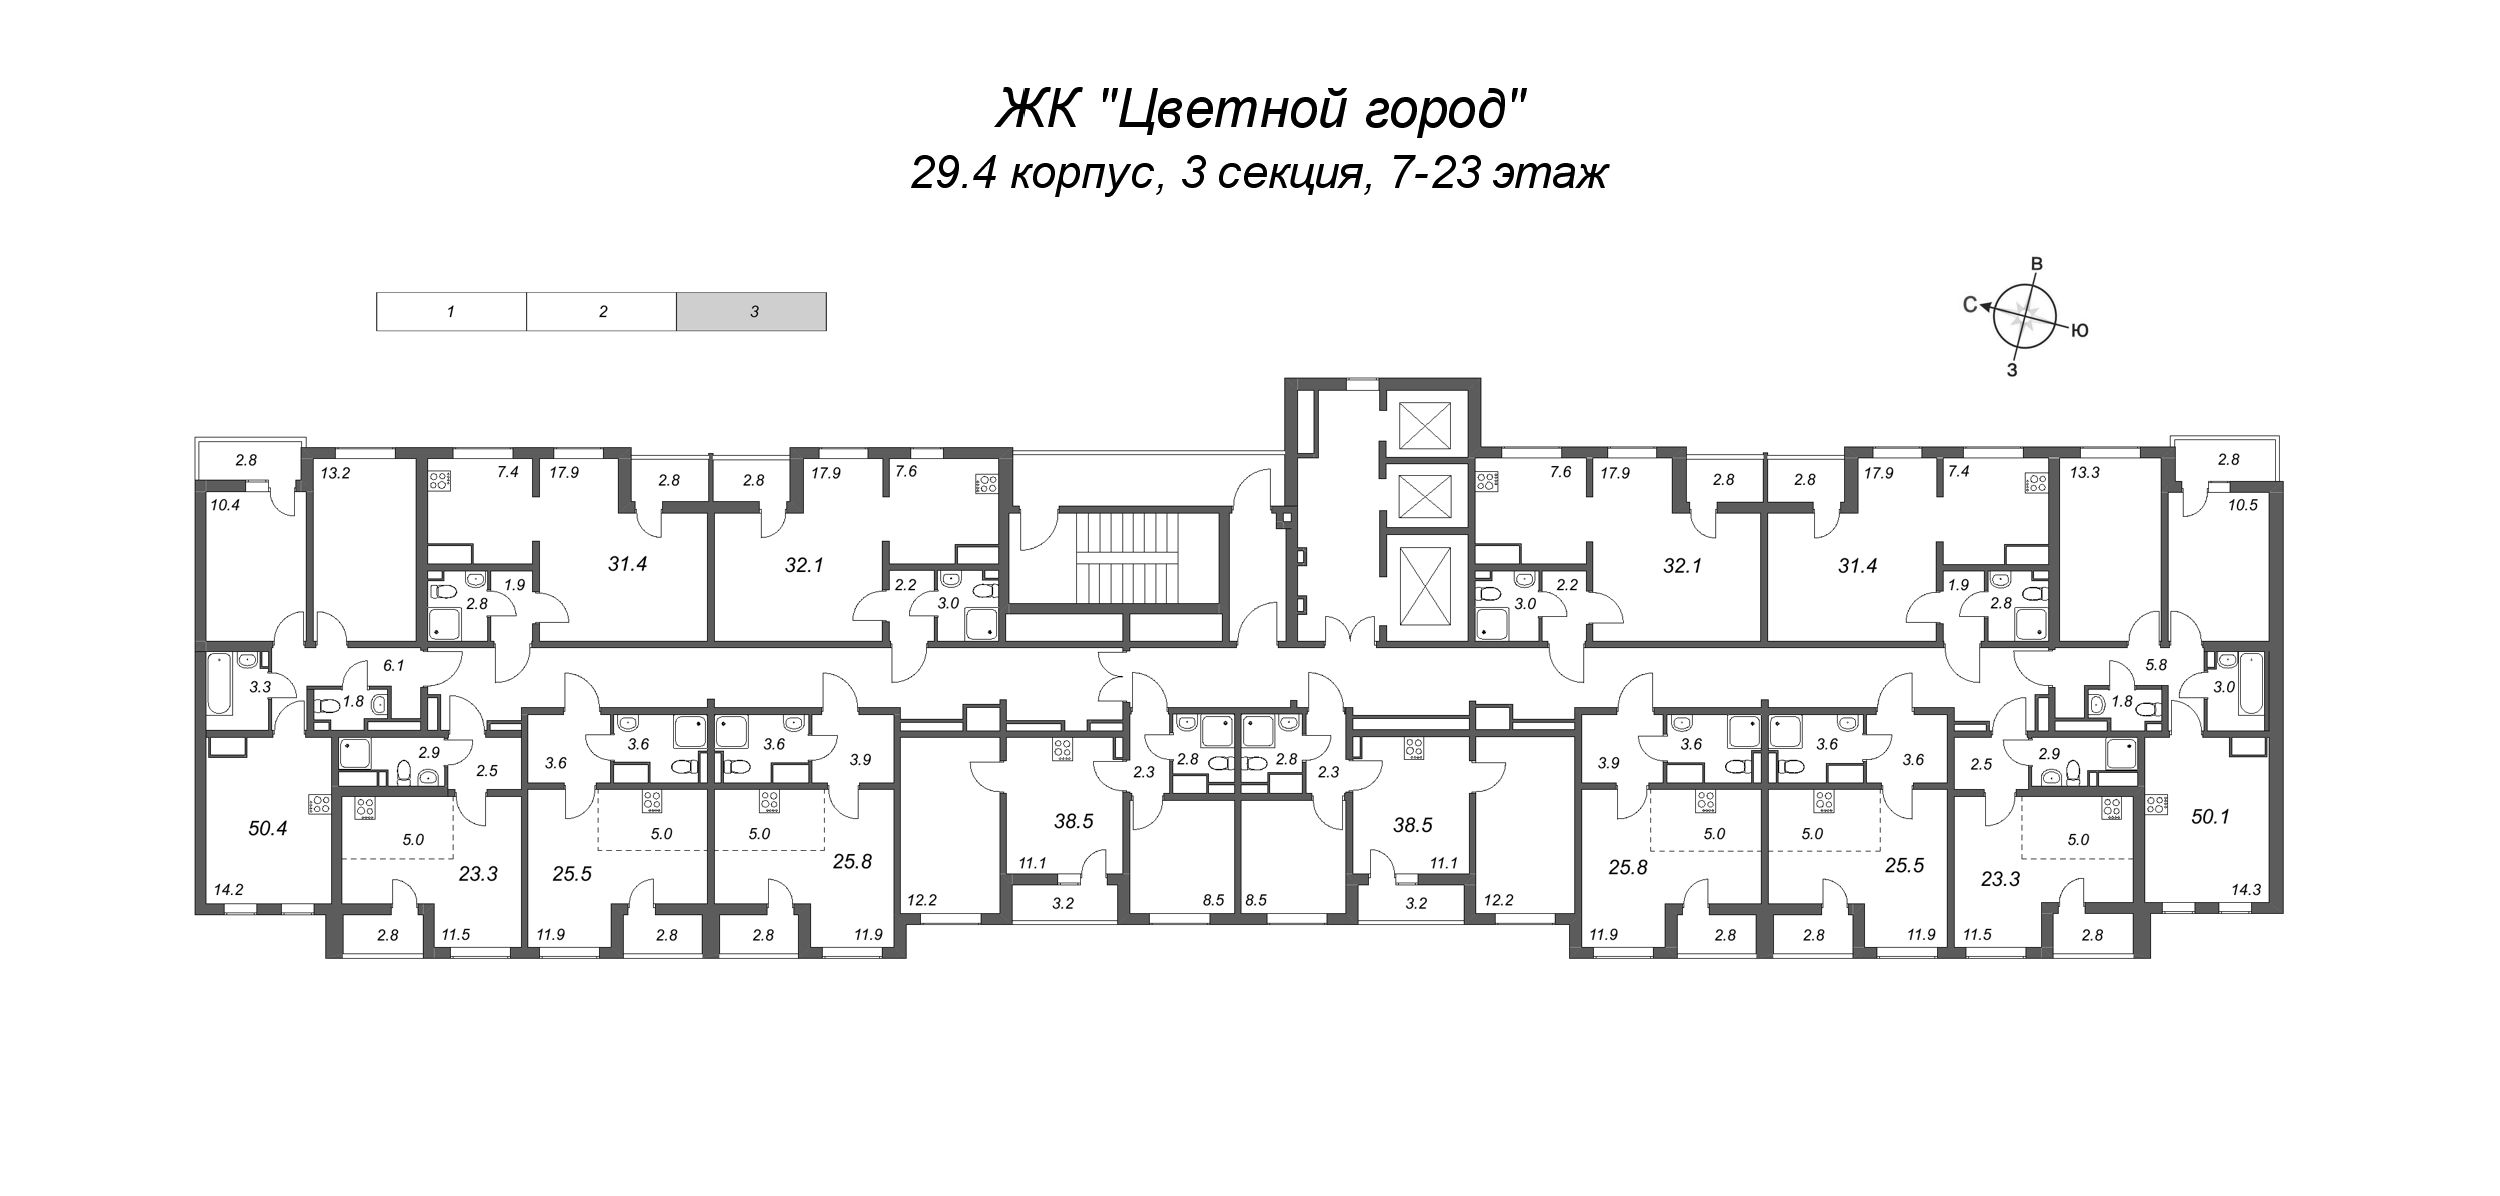 Квартира-студия, 23.3 м² в ЖК "Цветной город" - планировка этажа